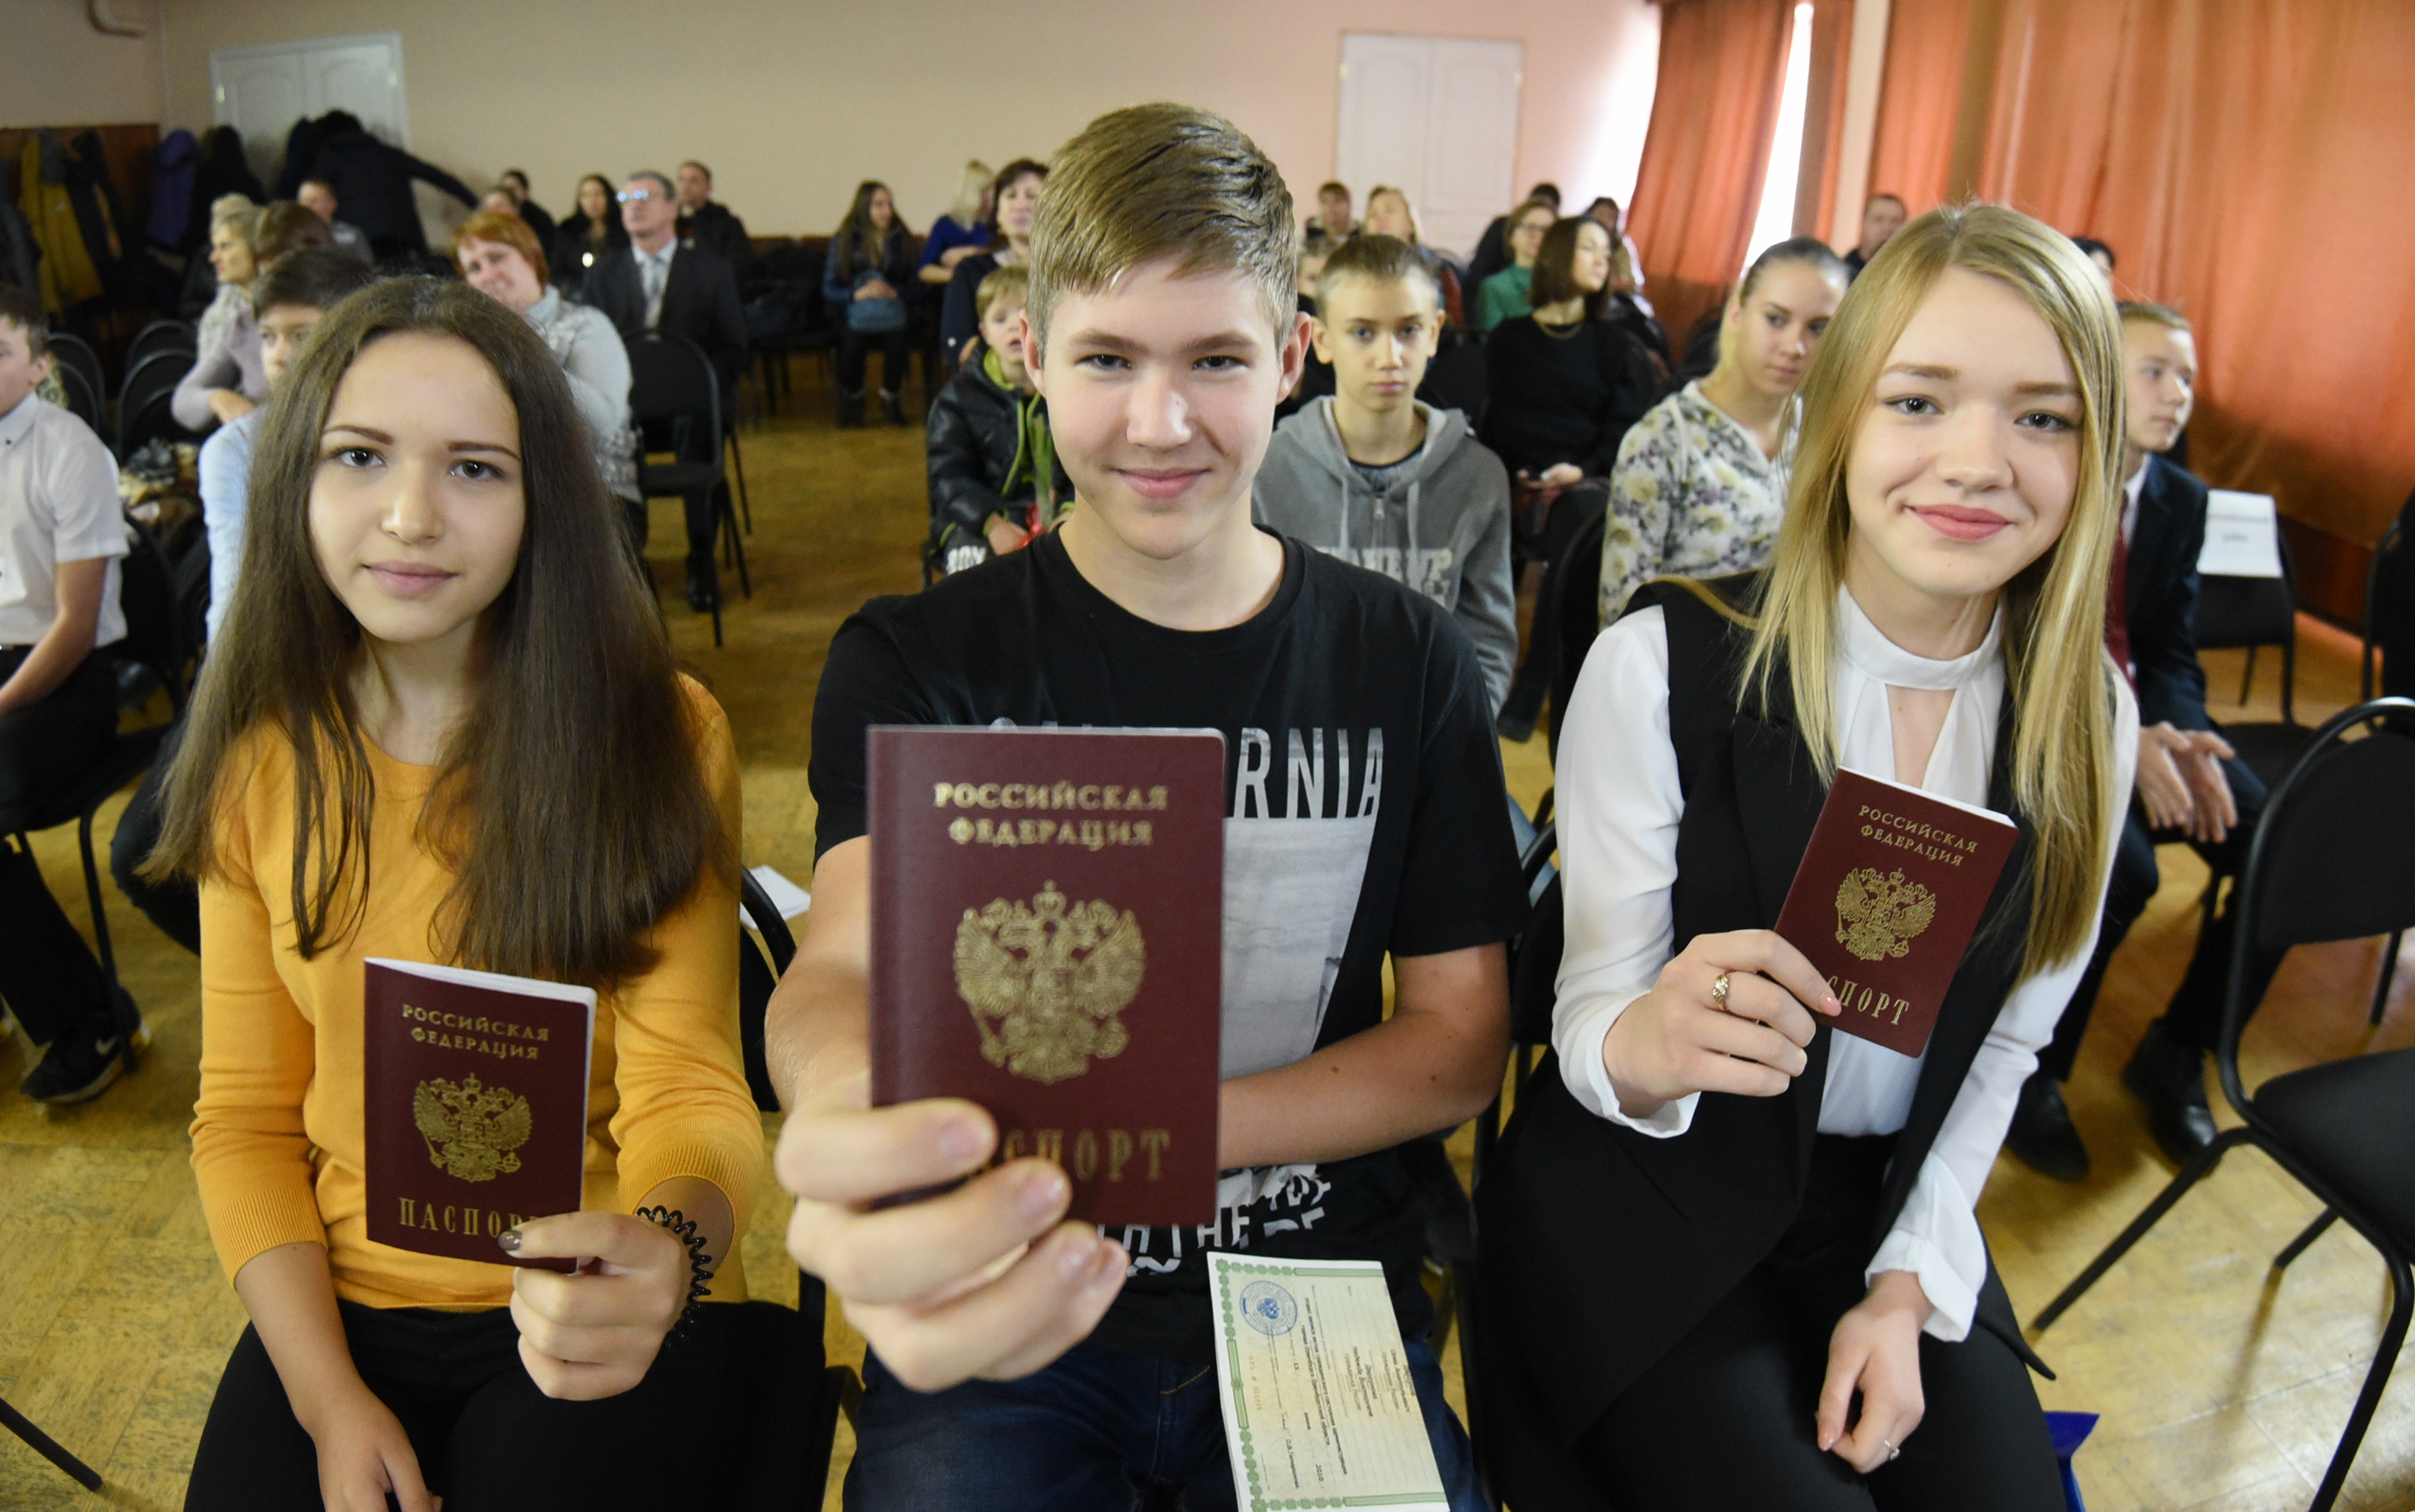 Получить российский паспорт в ЛНР могут как взрослые, так и подростки